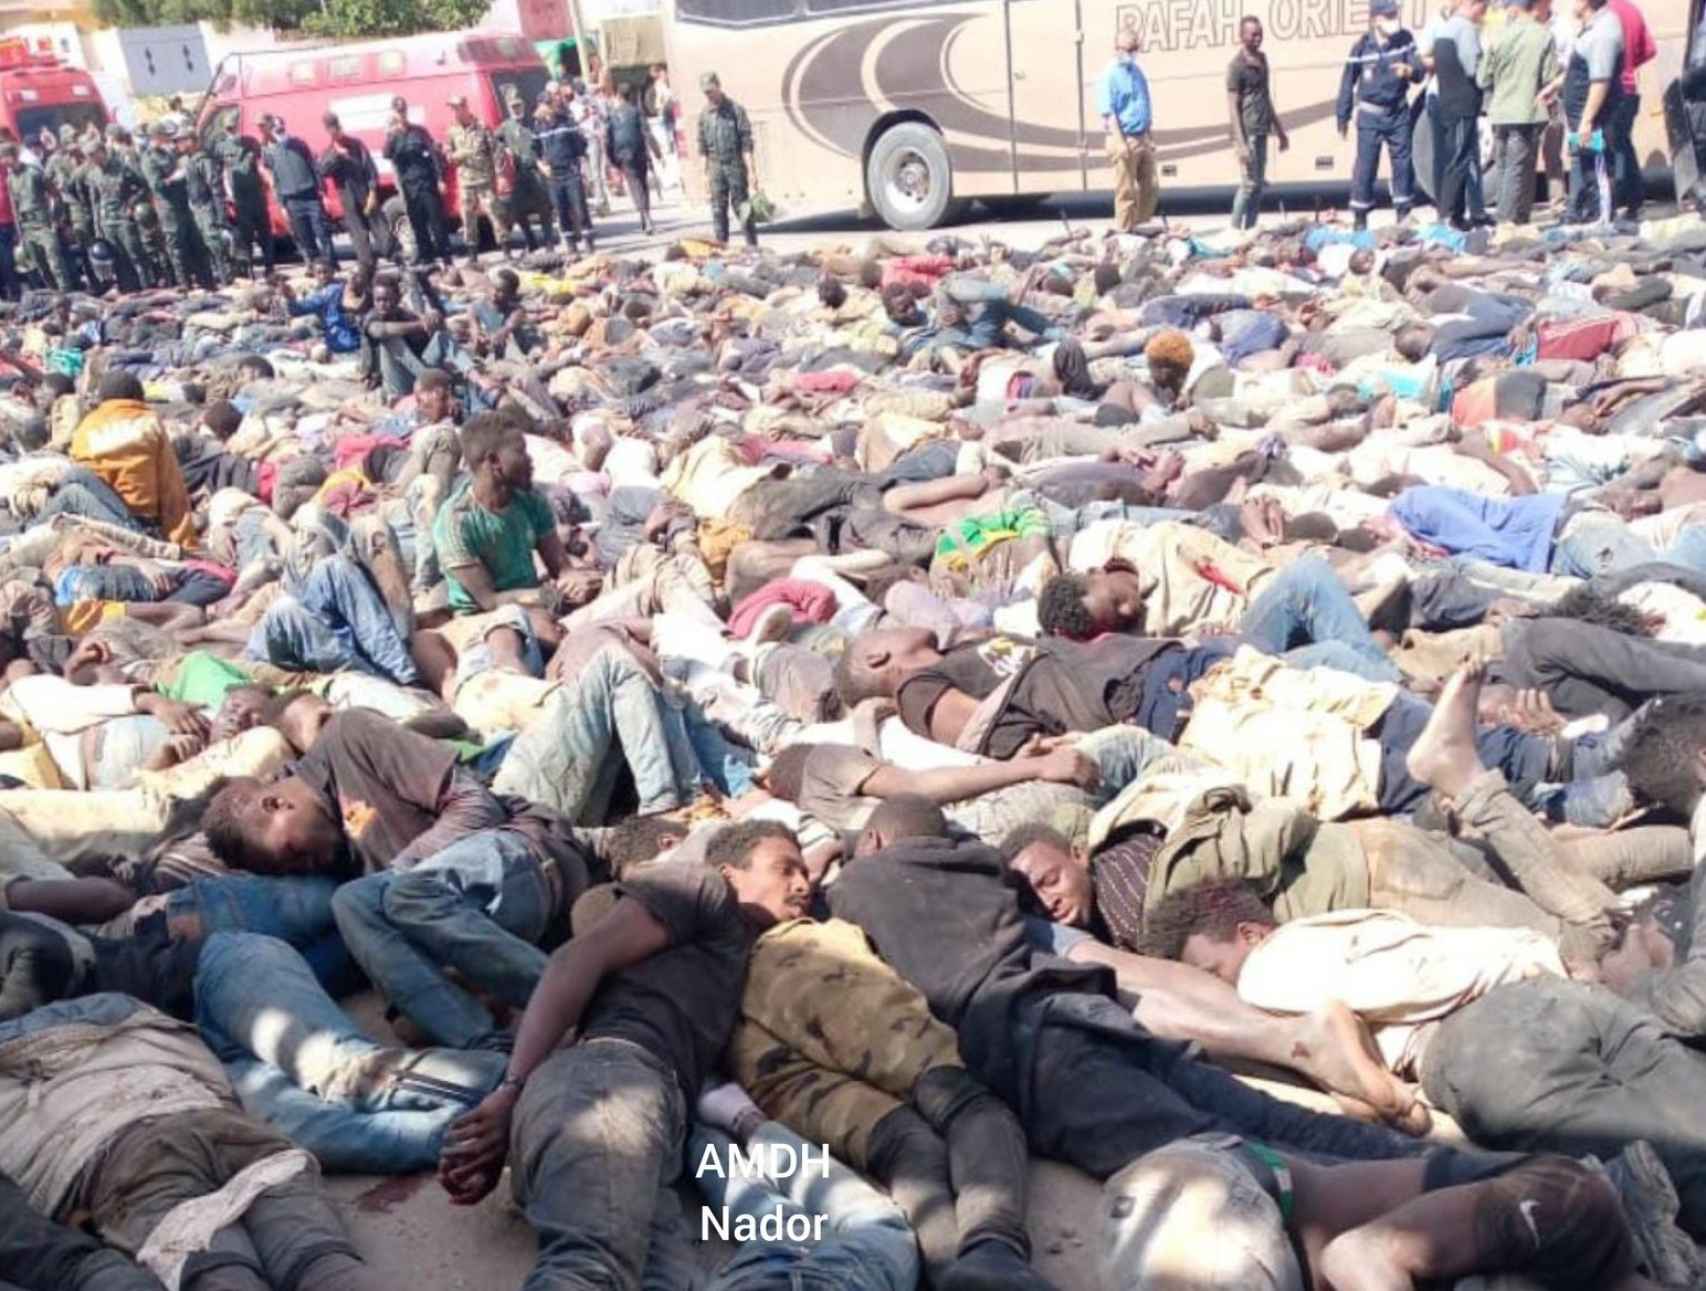 Migrantes subsaharianos yacen amontonados, muchos de ellos heridos o muertos, en el lado marroquí de la frontera con Melilla, el 24 de junio.